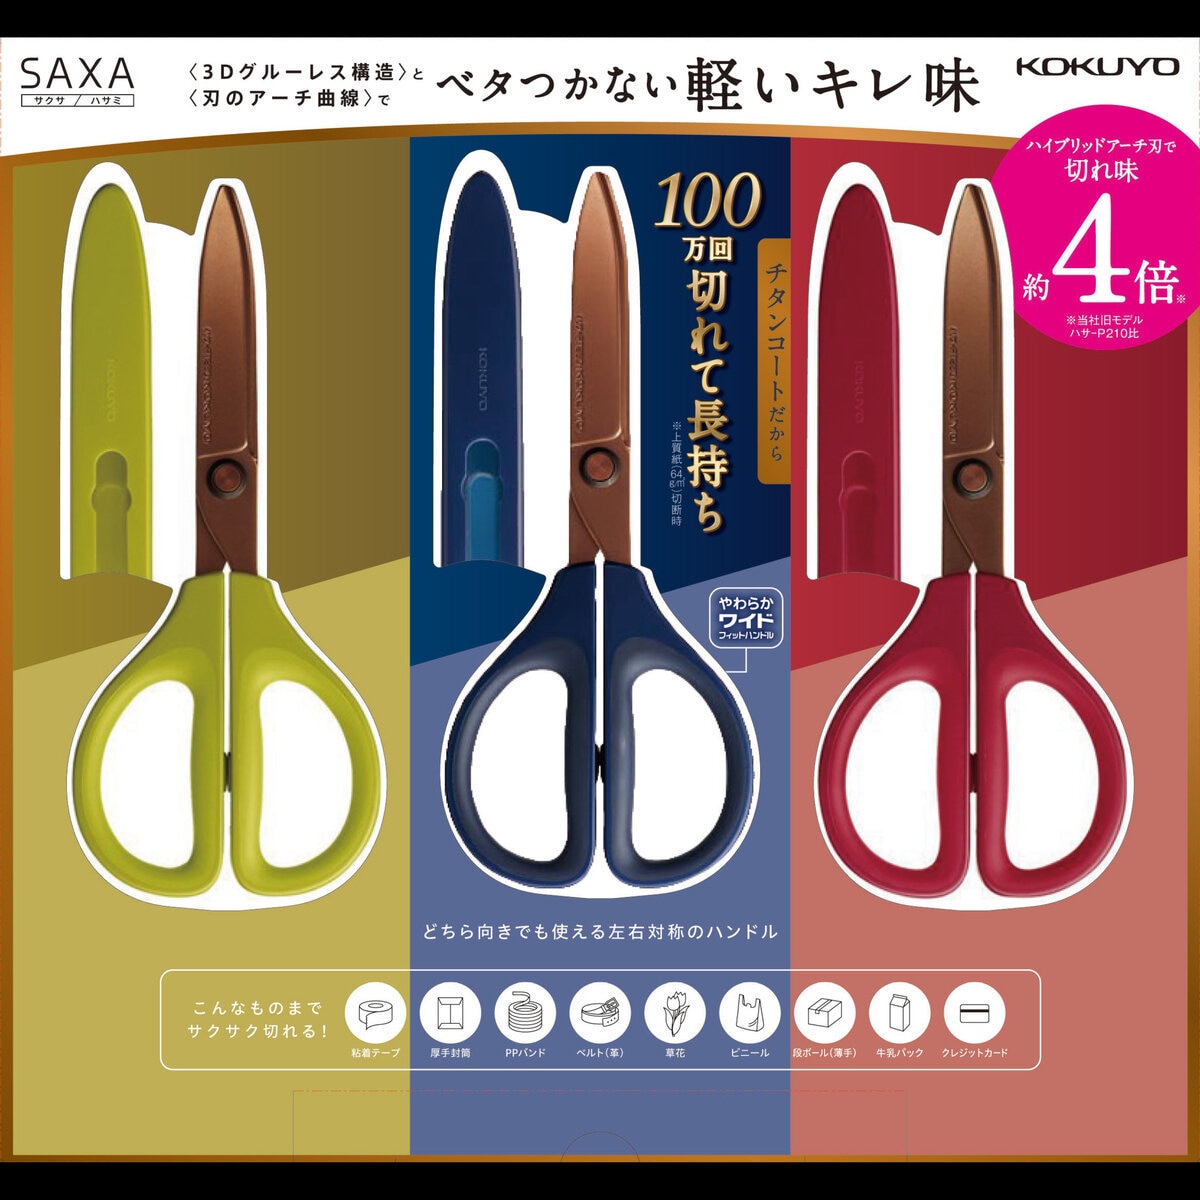 コクヨ サクサ チタングルーレス刃 ハサミ 3本セット | Costco Japan